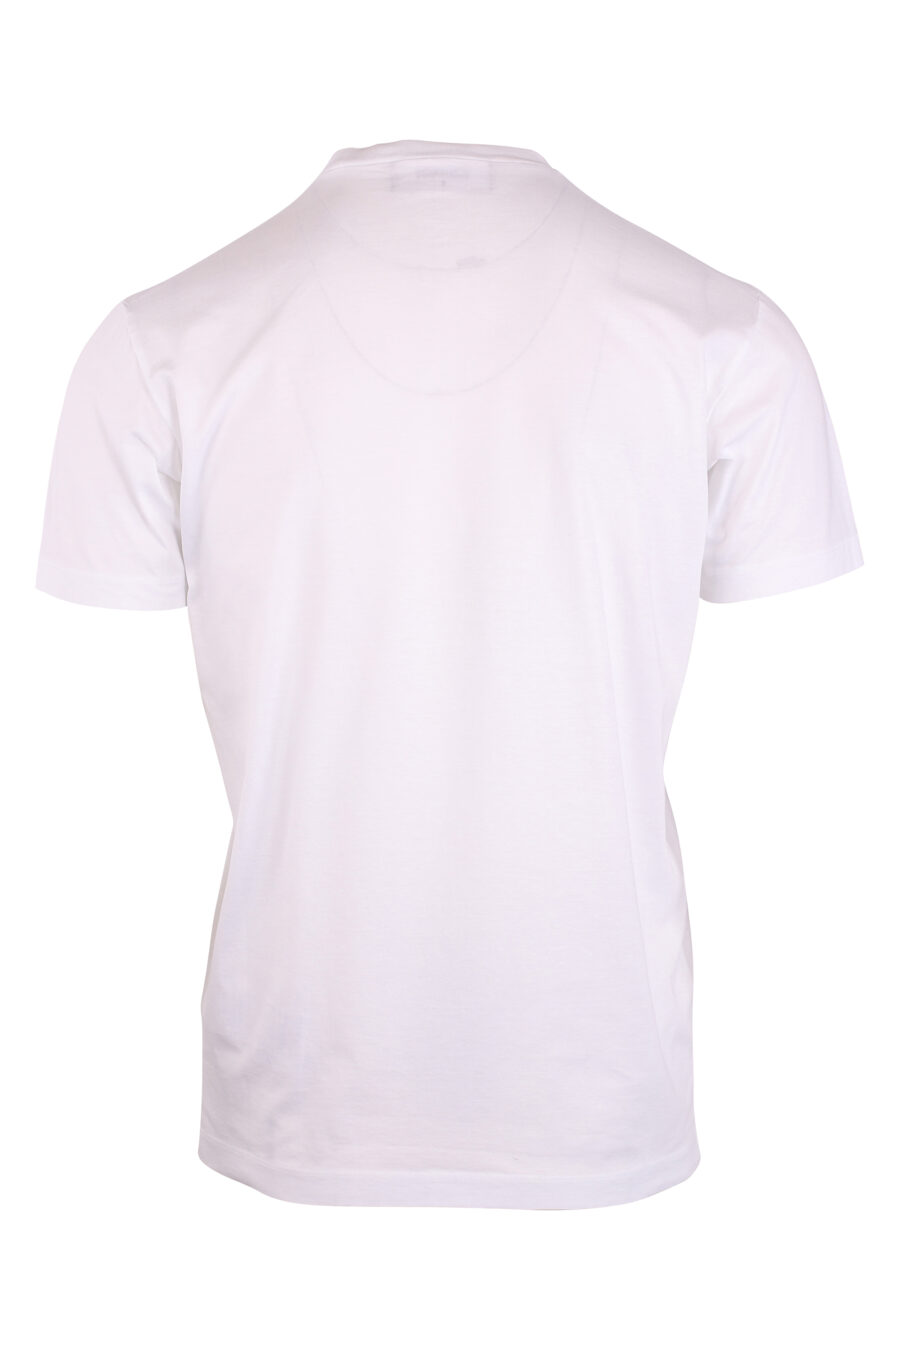 T-shirt branca com o logótipo "icon surfer" - IMG 8886